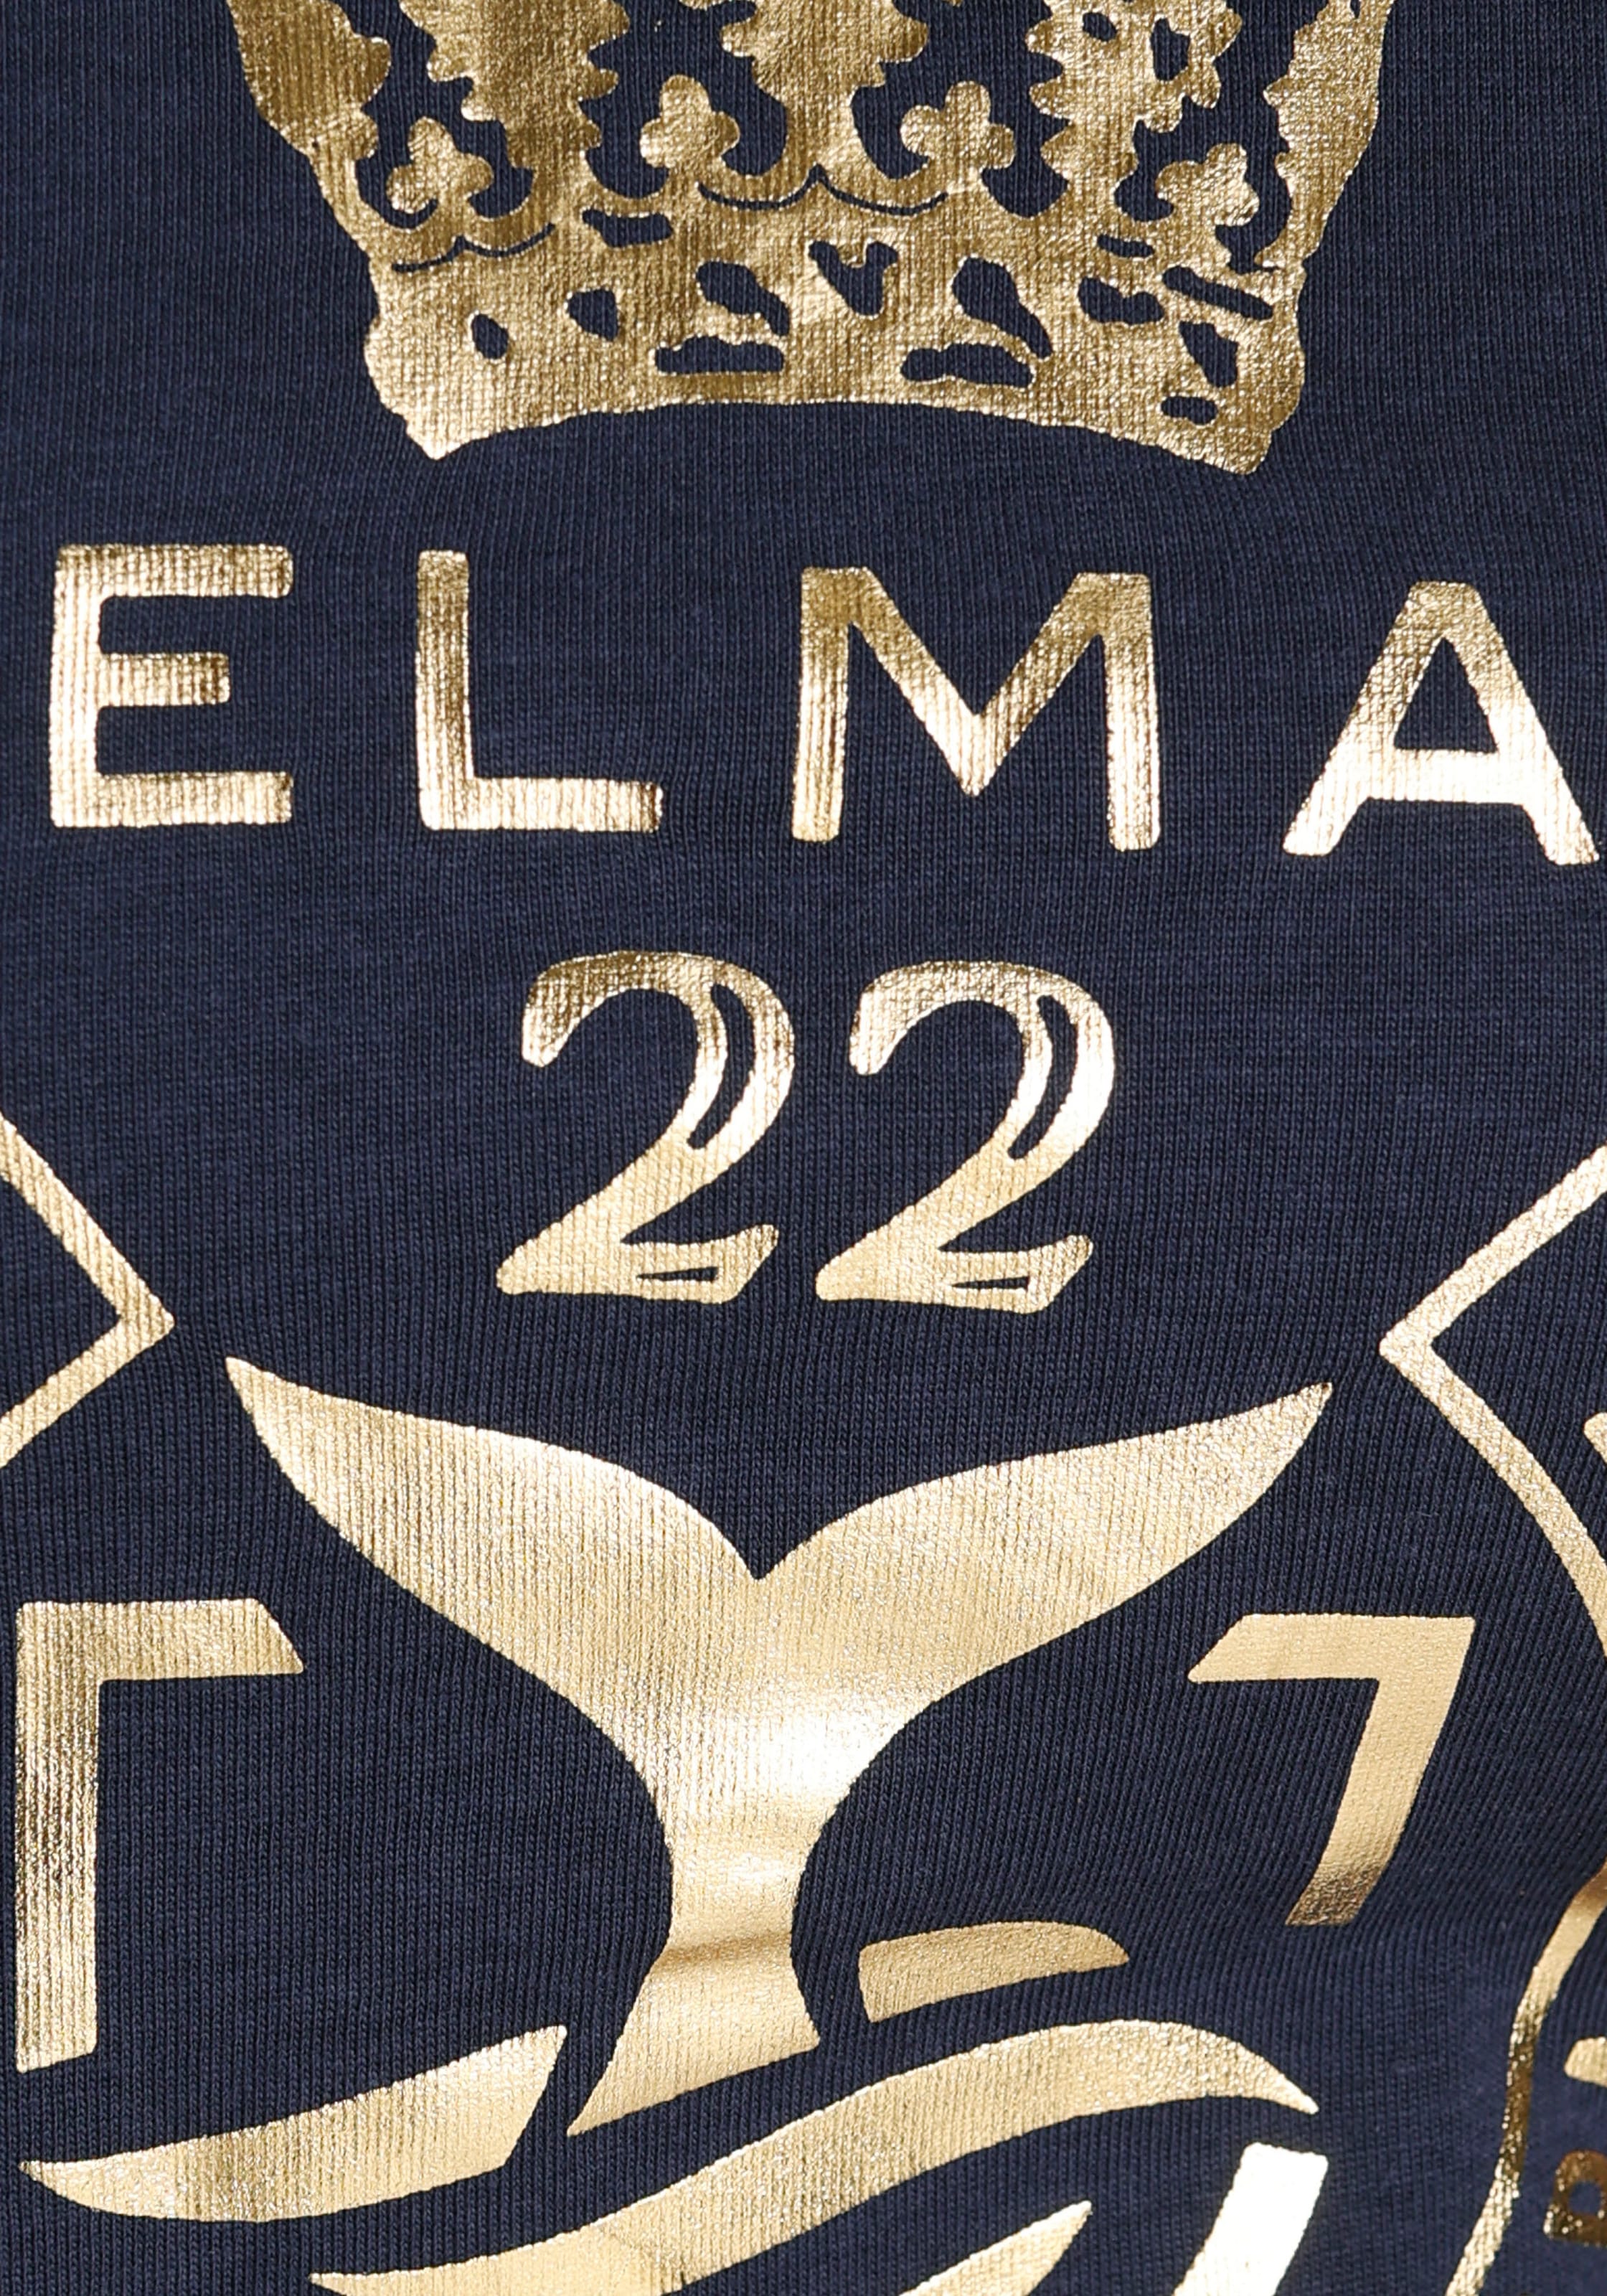 DELMAO T-Shirt, NEUE mit MARKE! bei ♕ Folienprint - goldfarbenem hochwertigem